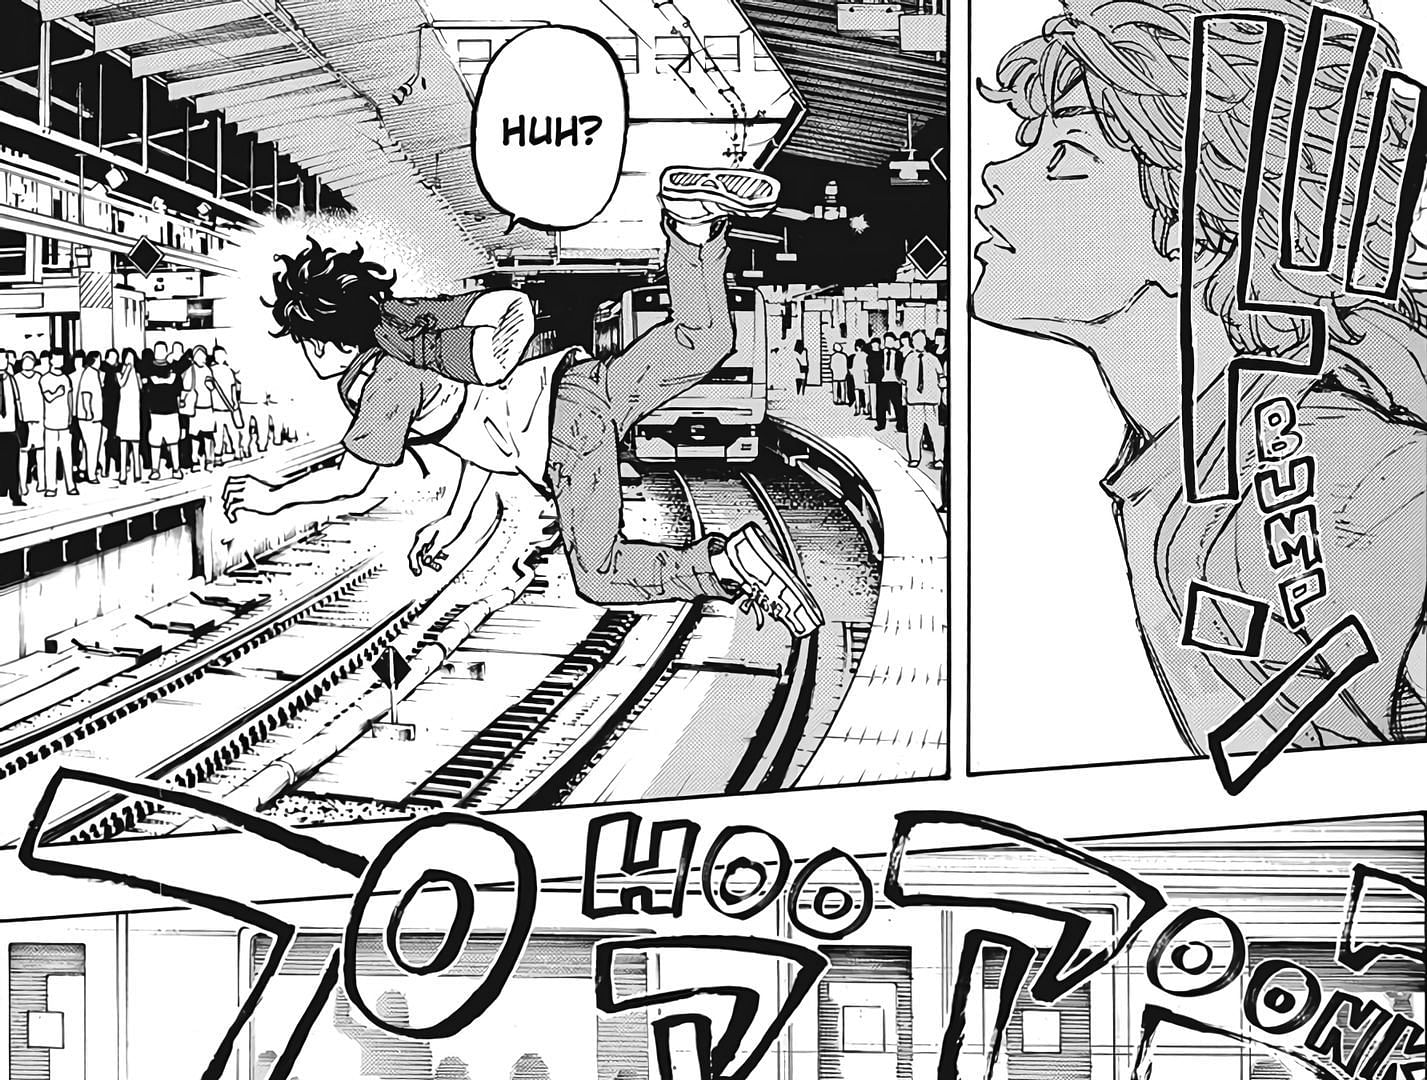 Takemichi being pushed in Tokyo Revengers chapter 1 (Image via Ken Wakui, Kodansha)